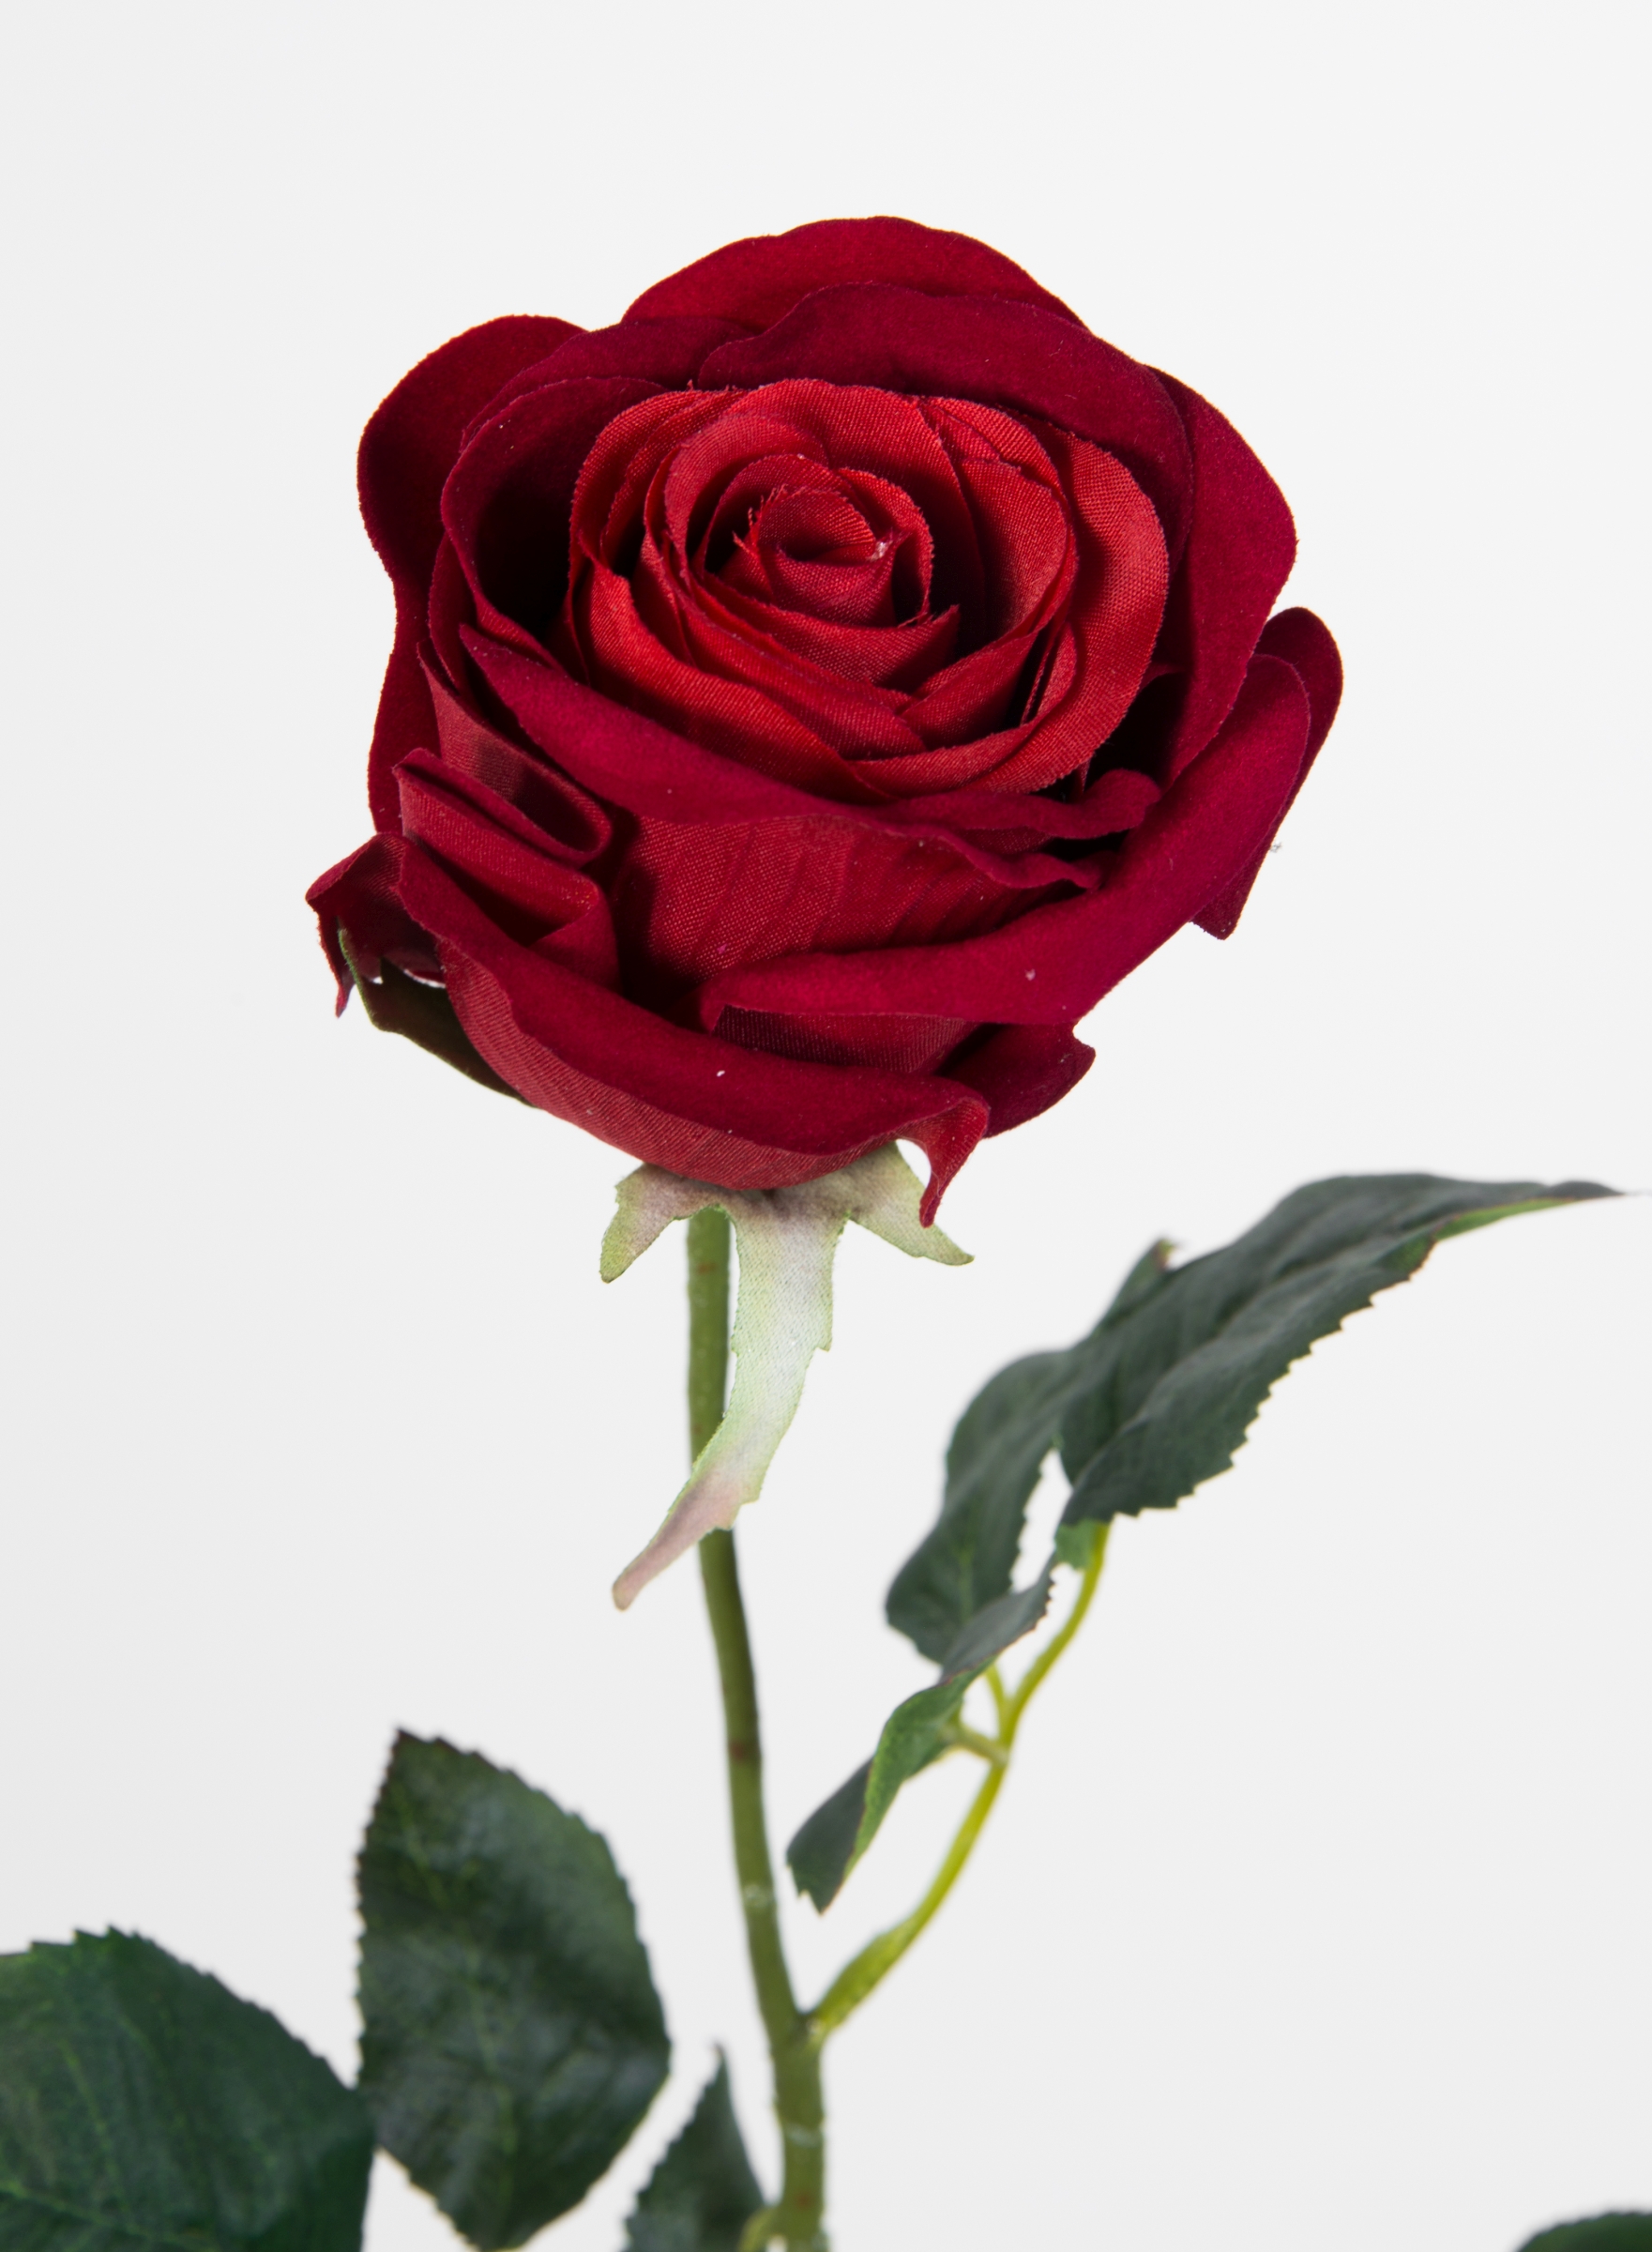 12 Stück Baccararose Rose künstliche 68cm Seidenblumen rot PM Rosen Kunstblumen Blumen